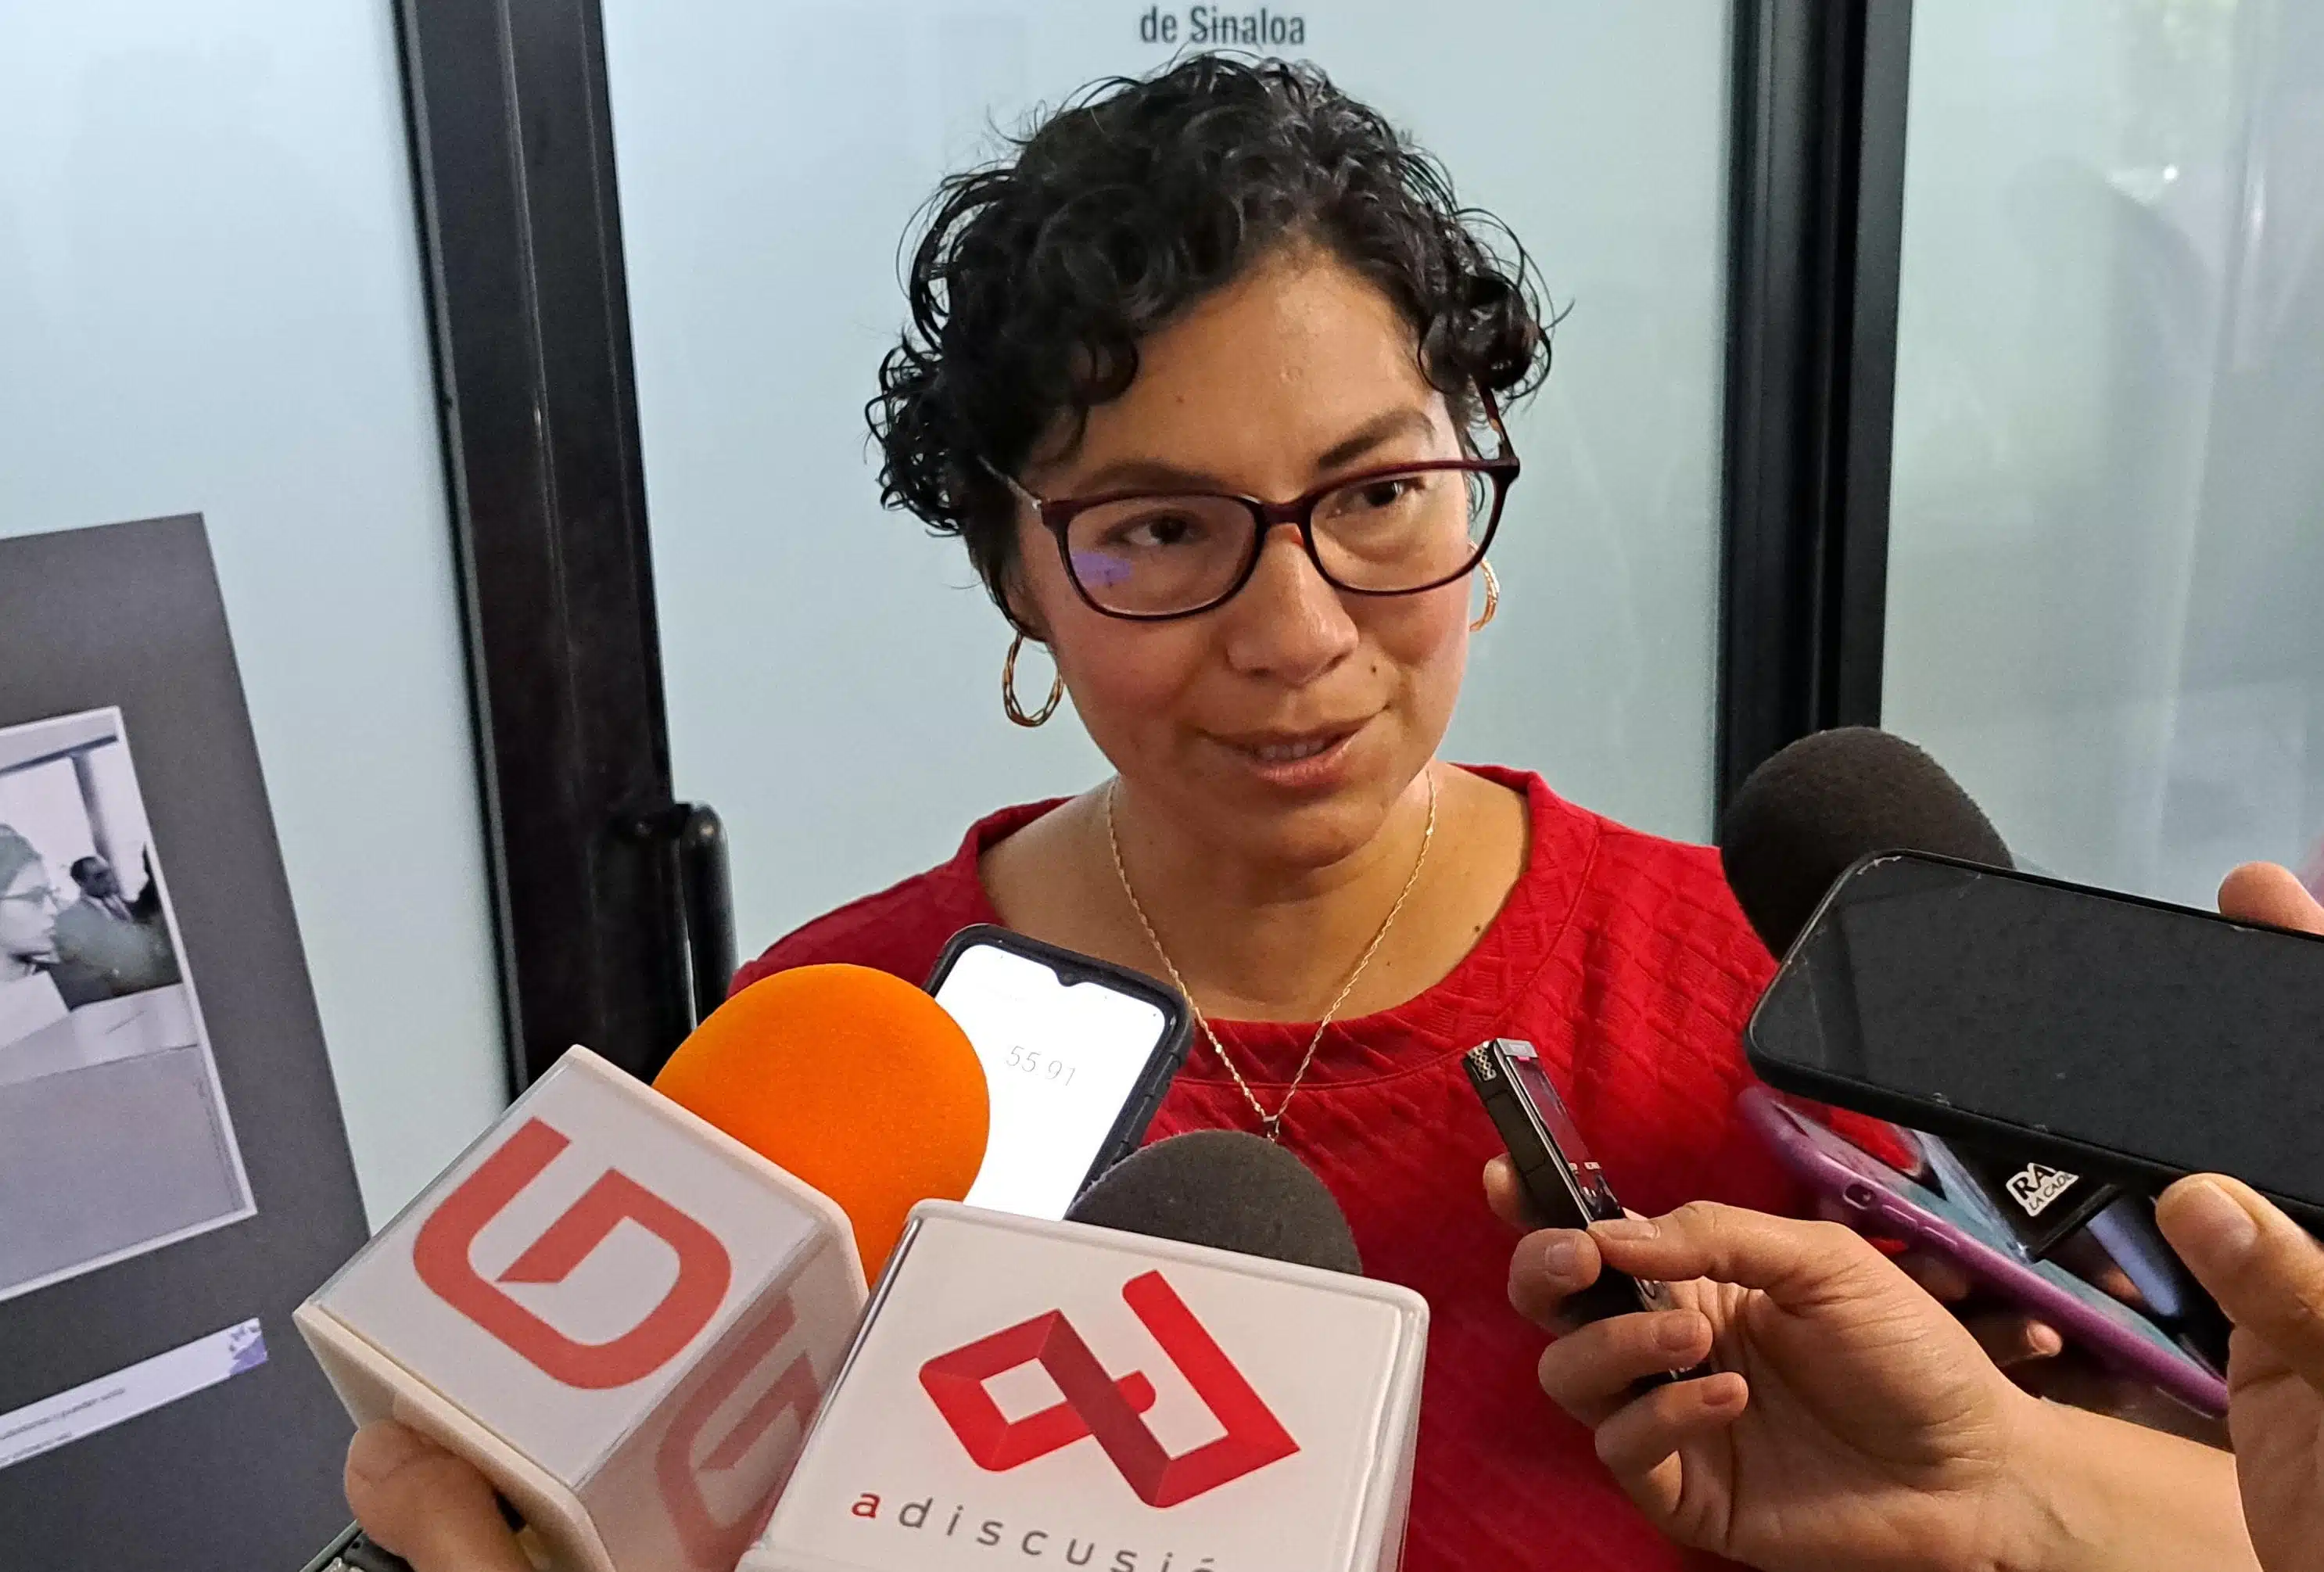 Rita Bell López Vences en entrevista con Línea Directa